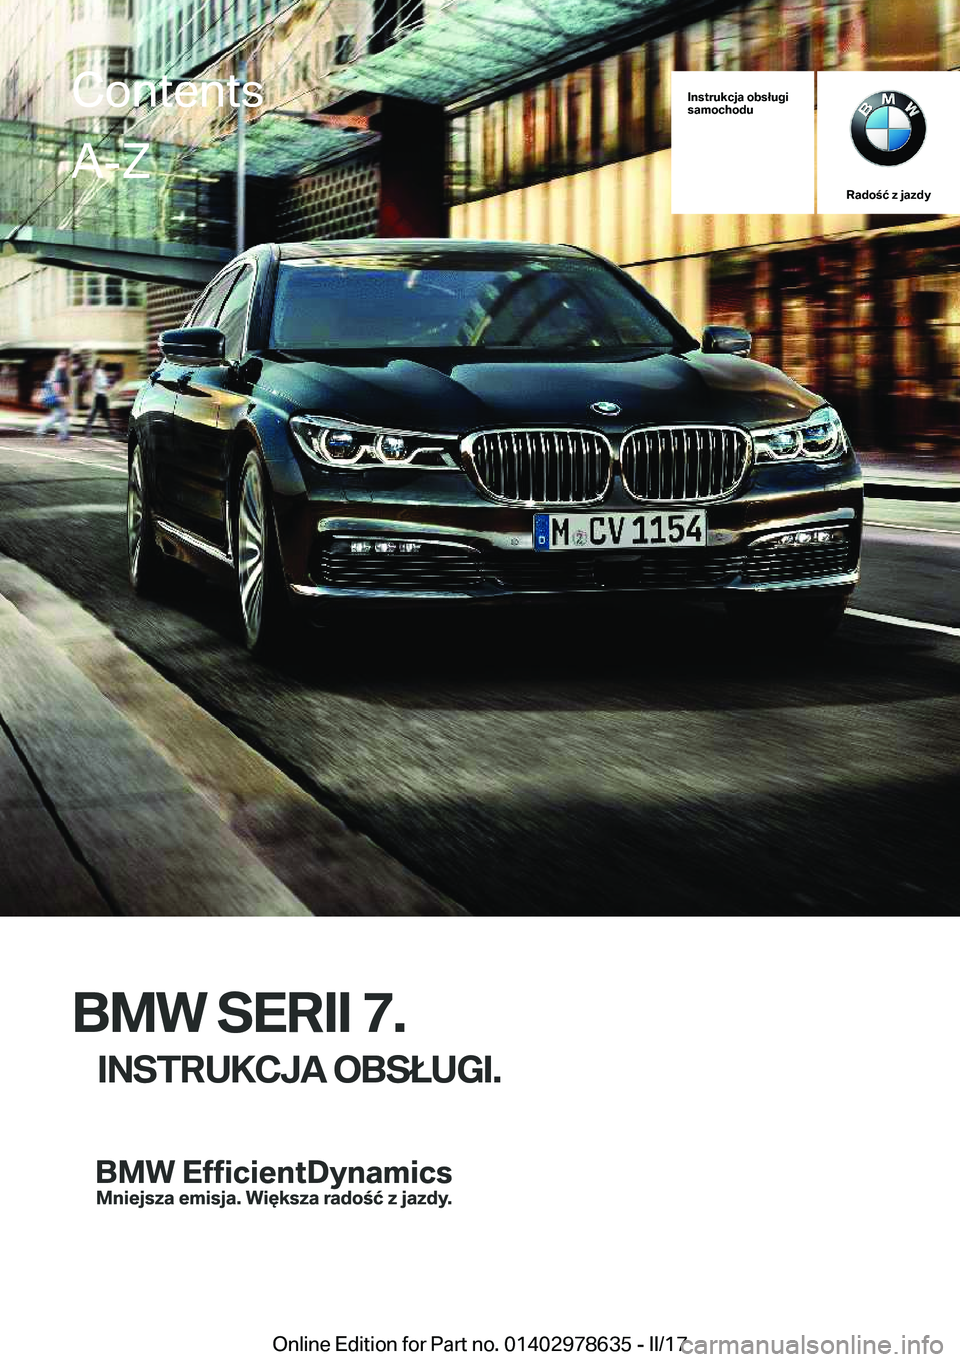 BMW 7 SERIES 2018  Instrukcja obsługi (in Polish) �I�n�s�t�r�u�k�c�j�a��o�b�s�ł�u�g�i
�s�a�m�o�c�h�o�d�u
�R�a�d�o�